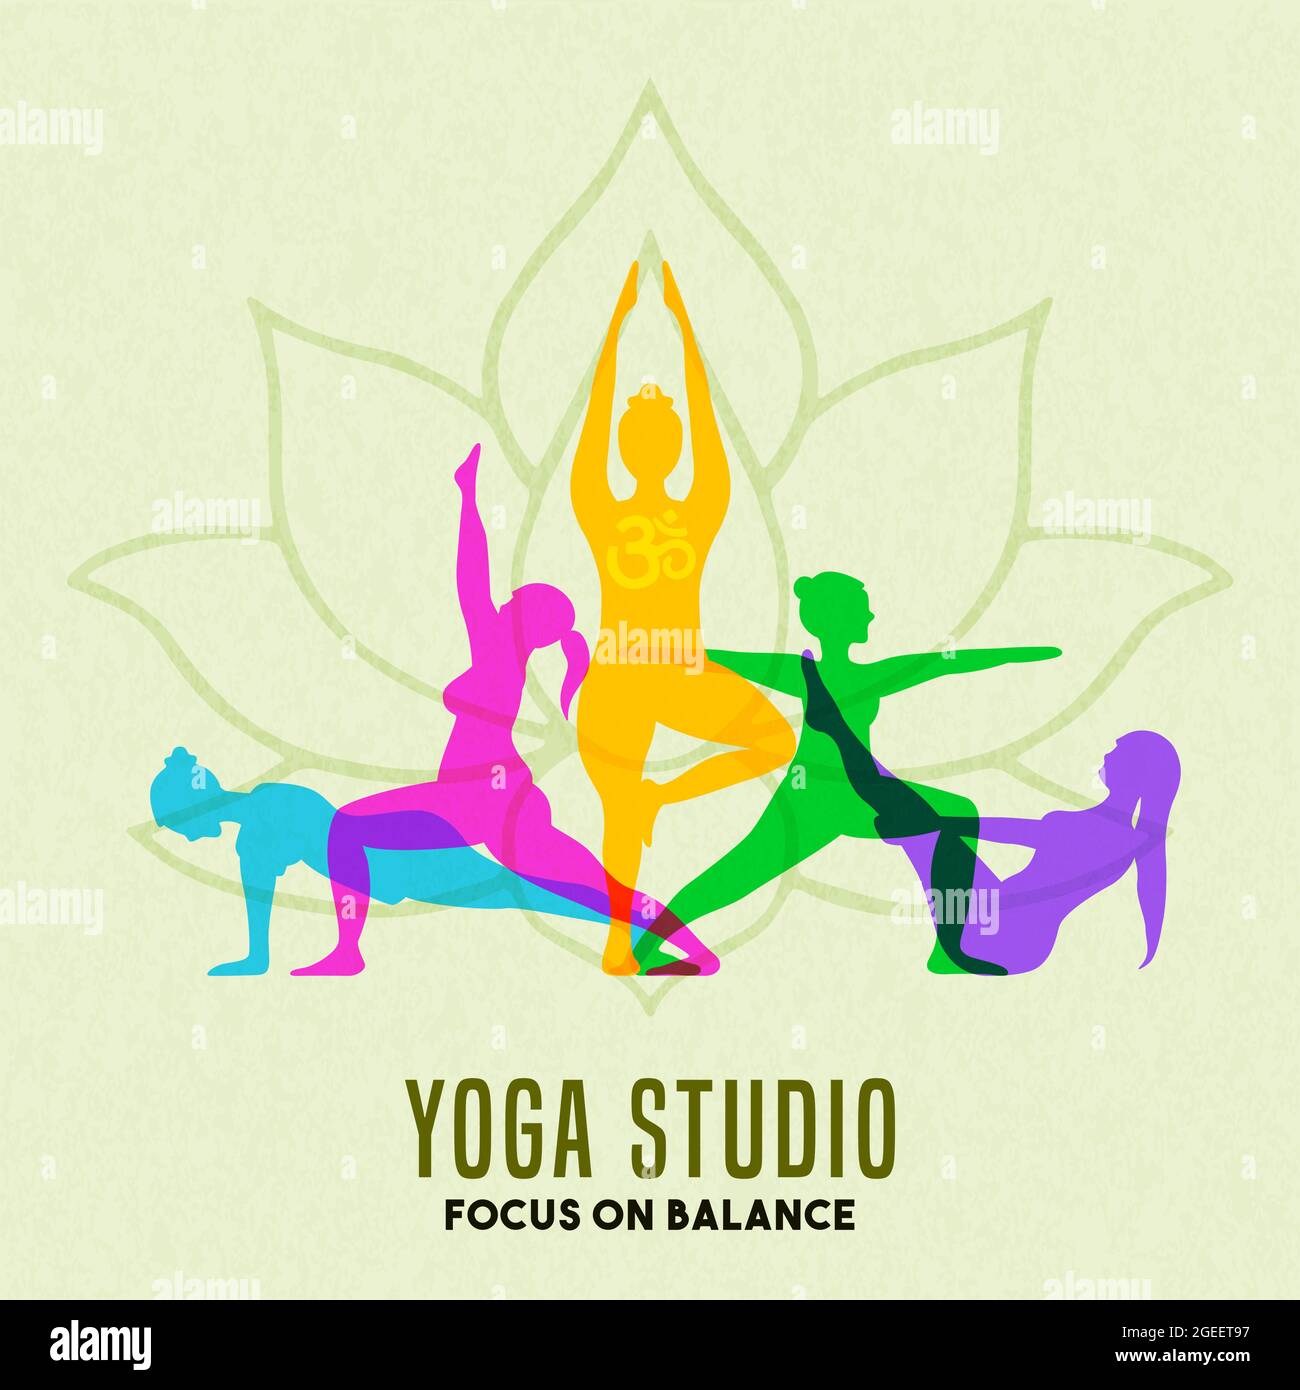 Studio de yoga illustration de personnes exercice groupe faisant la méditation pose avec silhouette colorée. Concept de santé et d'esprit pour le bien-être spirituel. Illustration de Vecteur